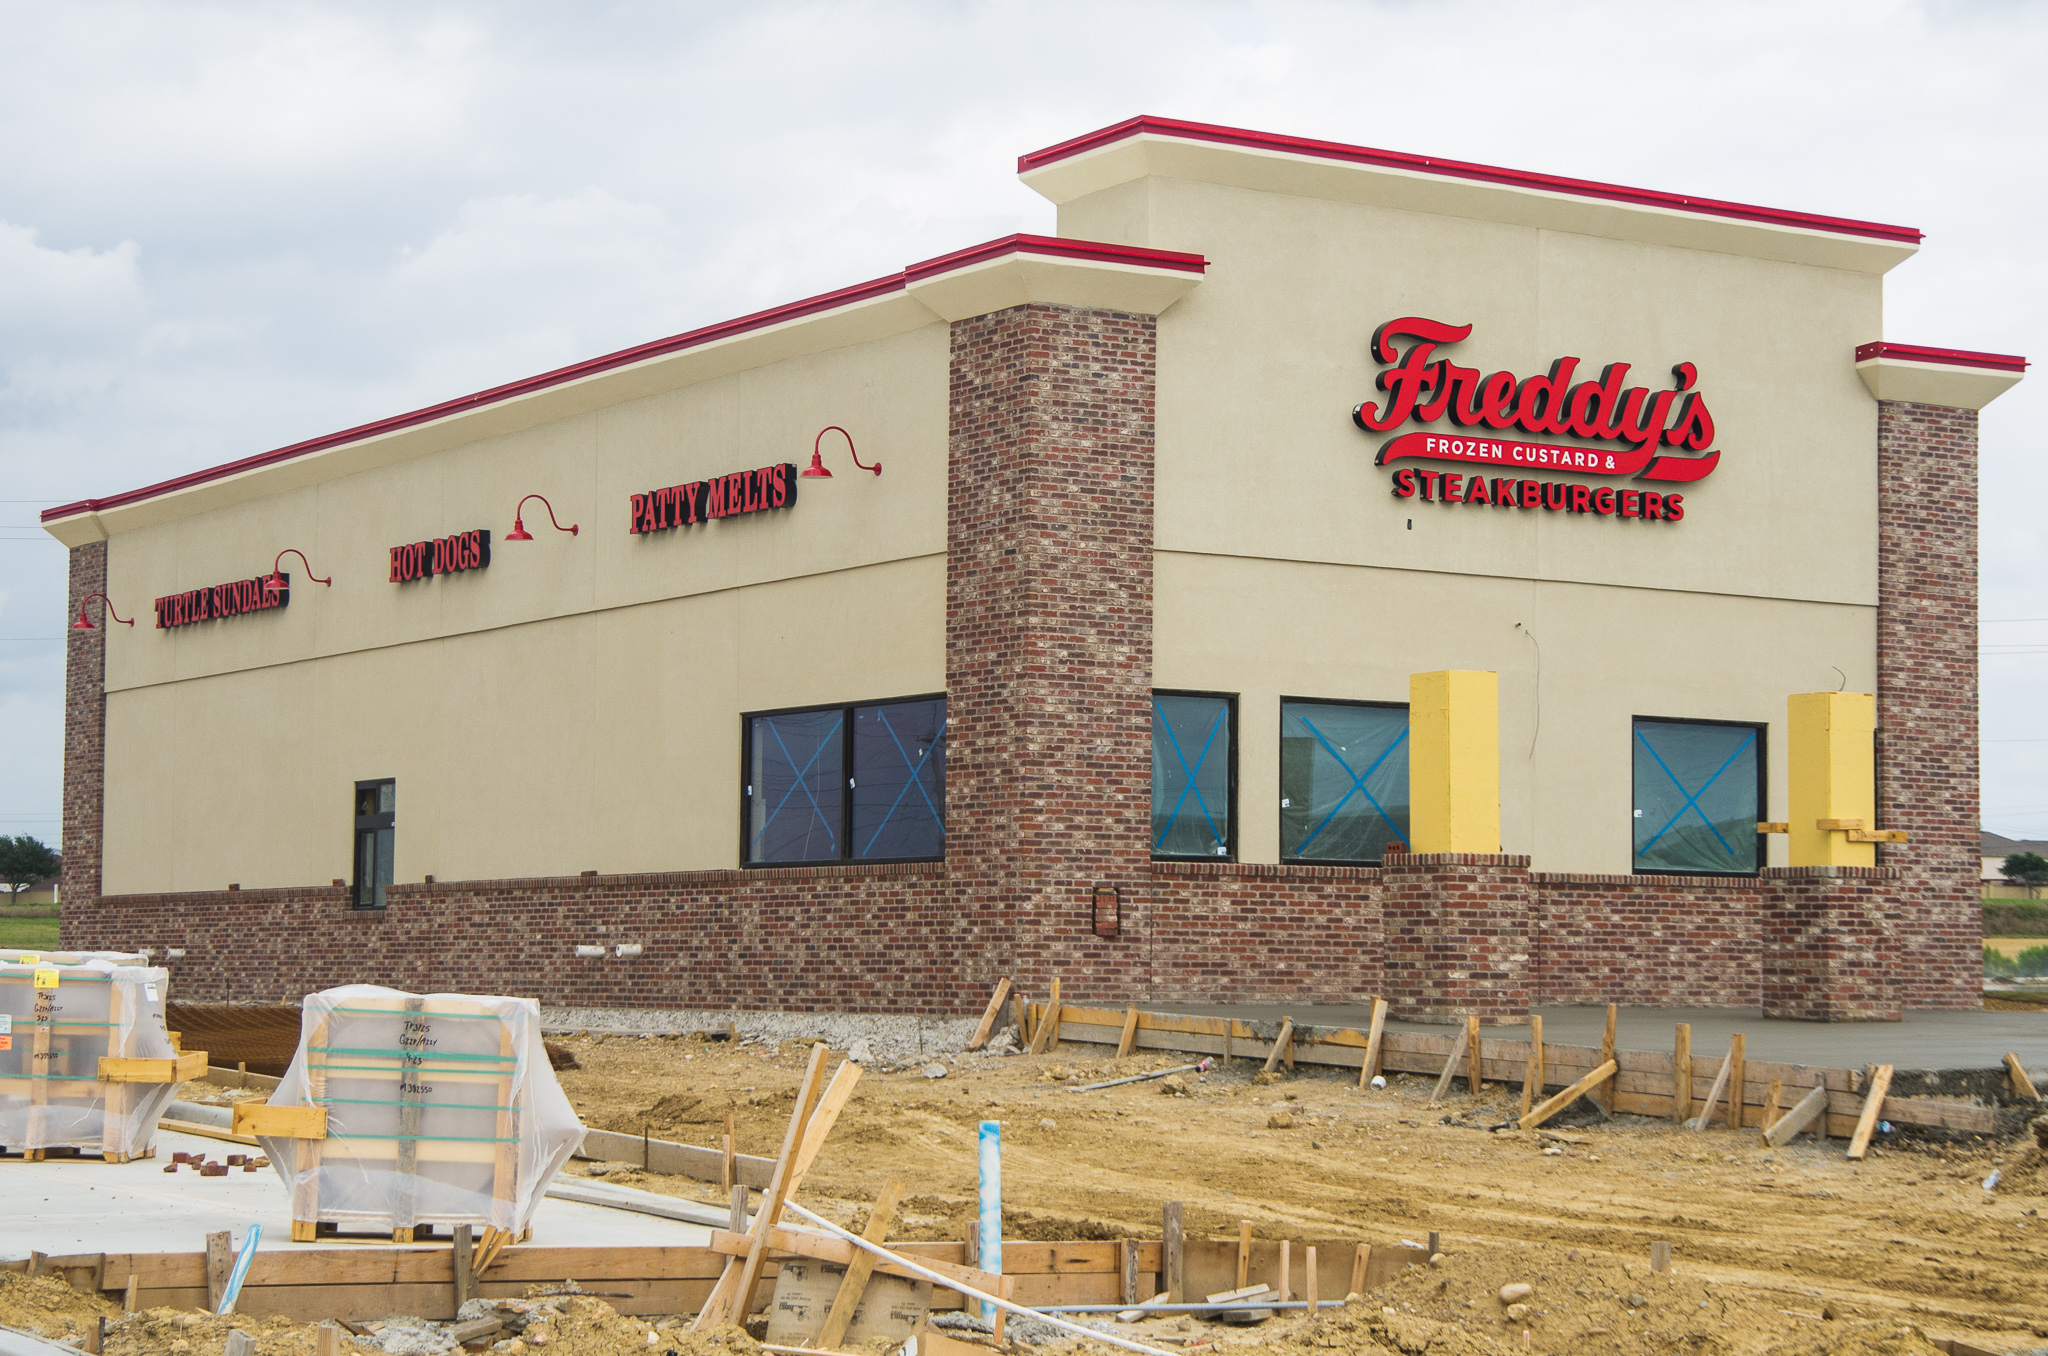 Freddy's Frozen Custard & Steakburgers opens in west Frisco